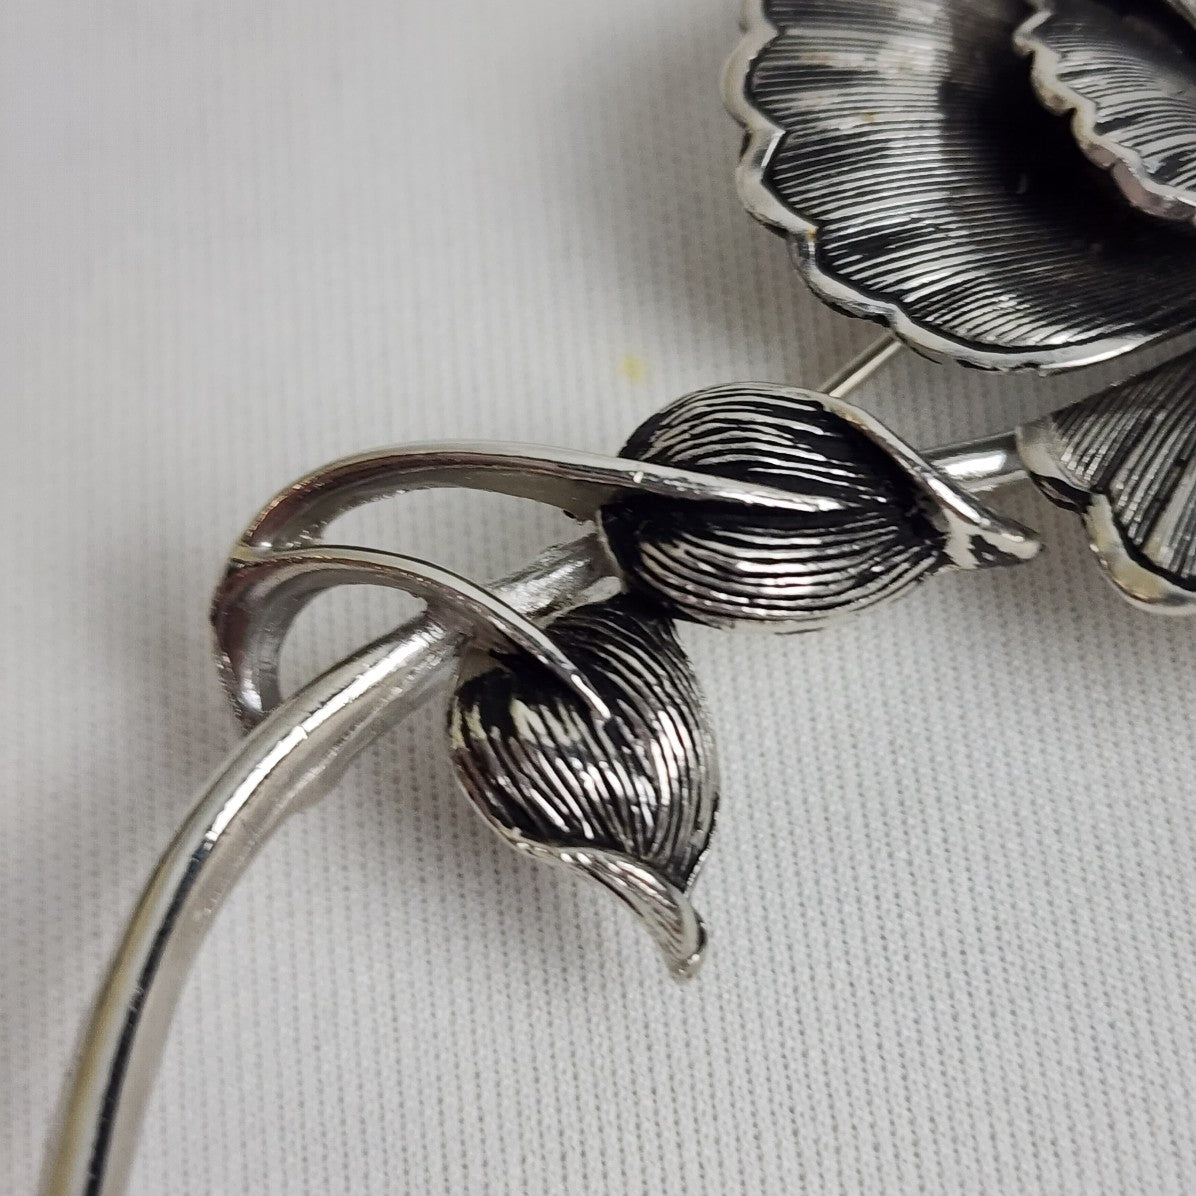 Vintage Silver Metal Flower Brooch & Earring Set